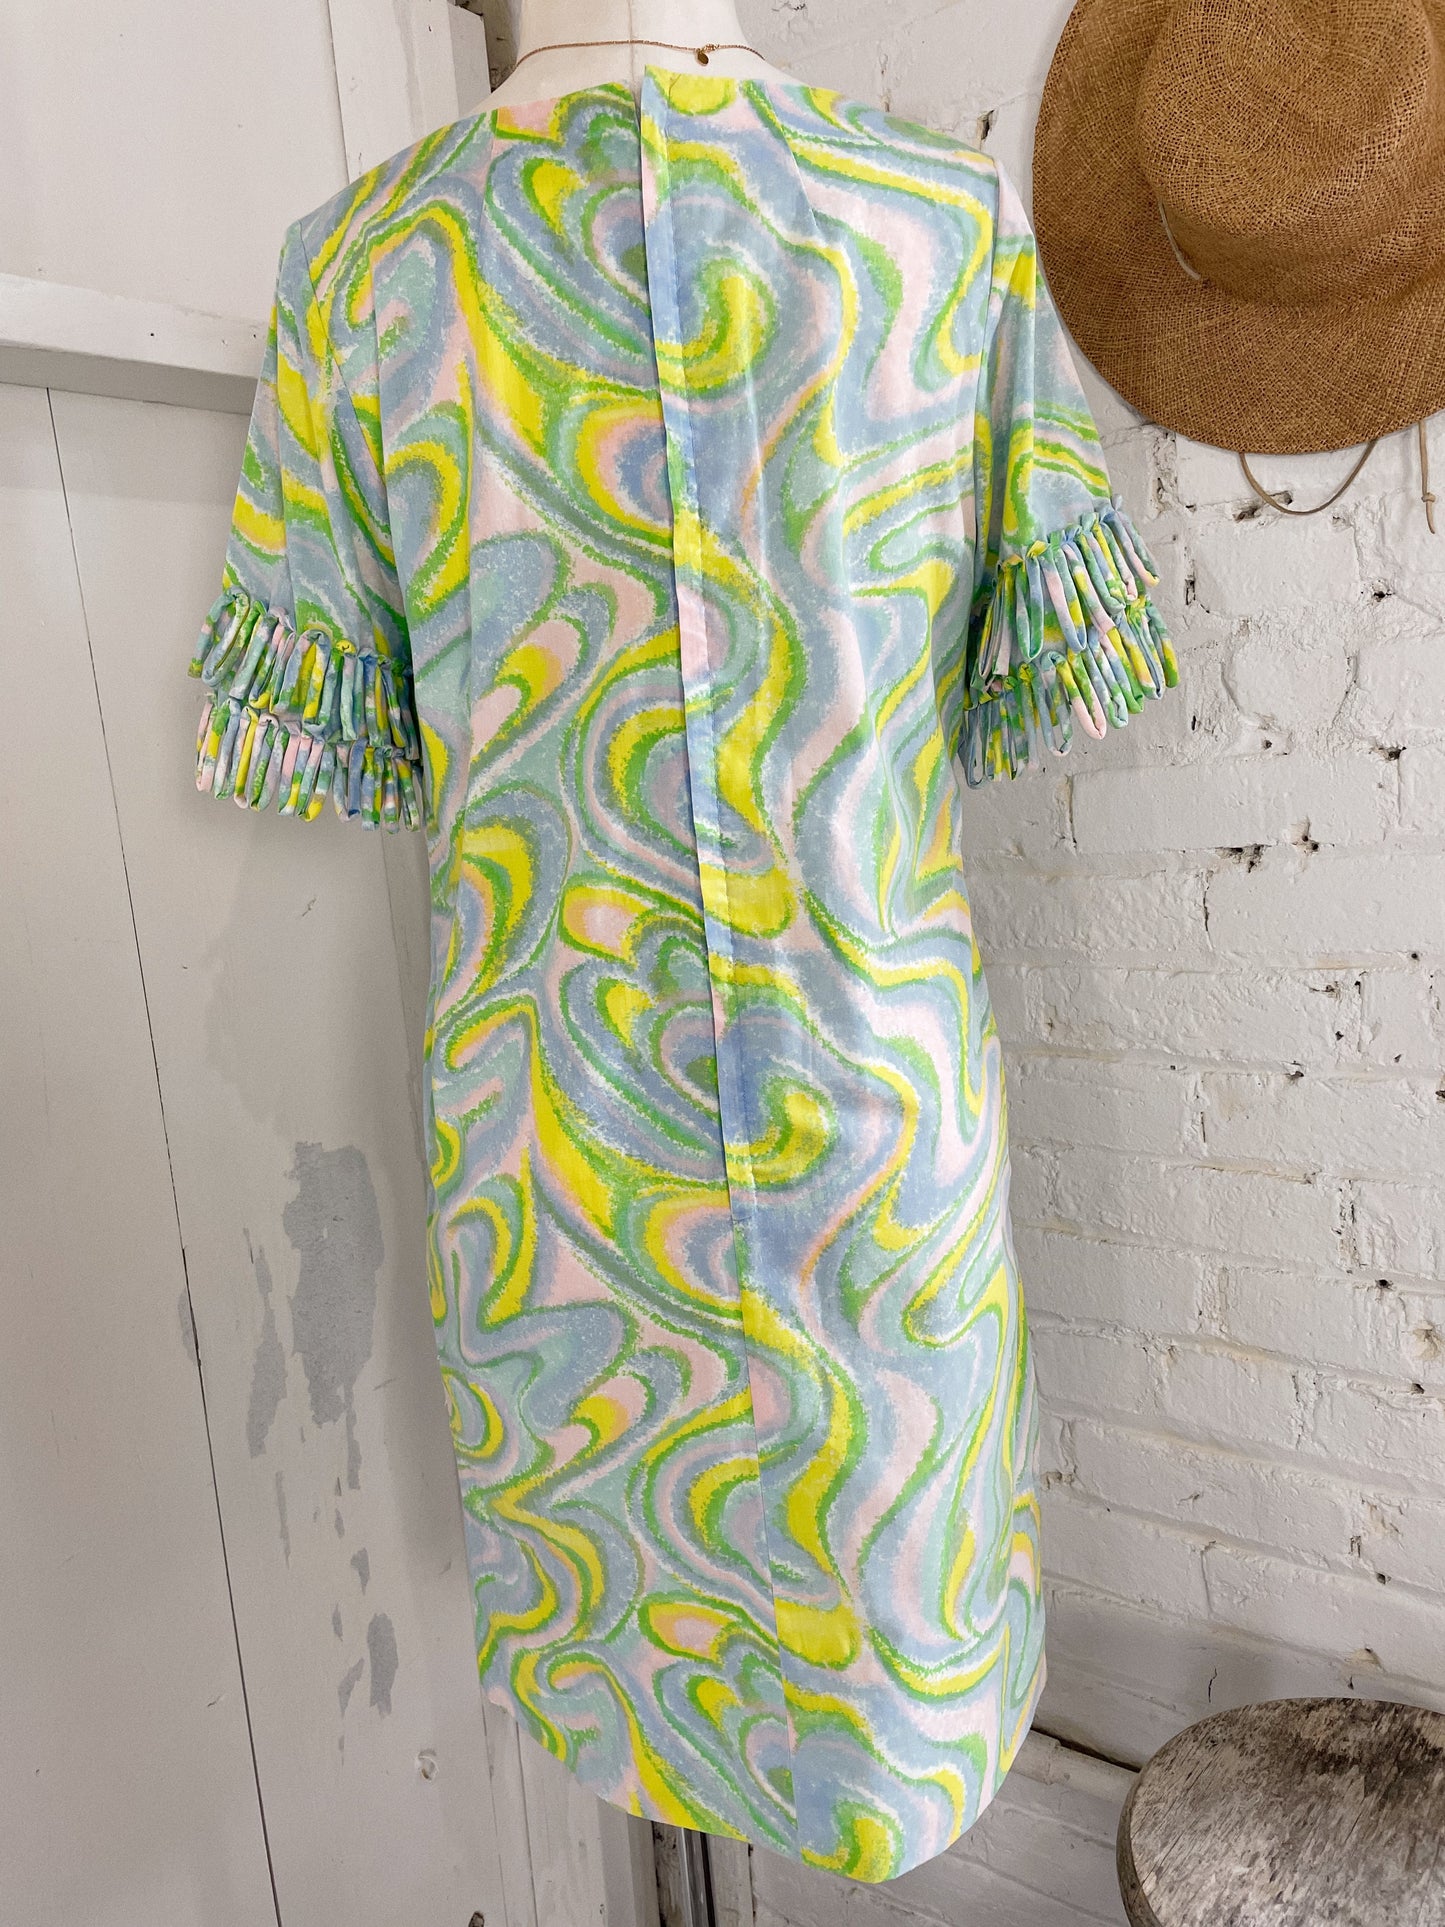 70s Swirl Dress with Loop Sleeves